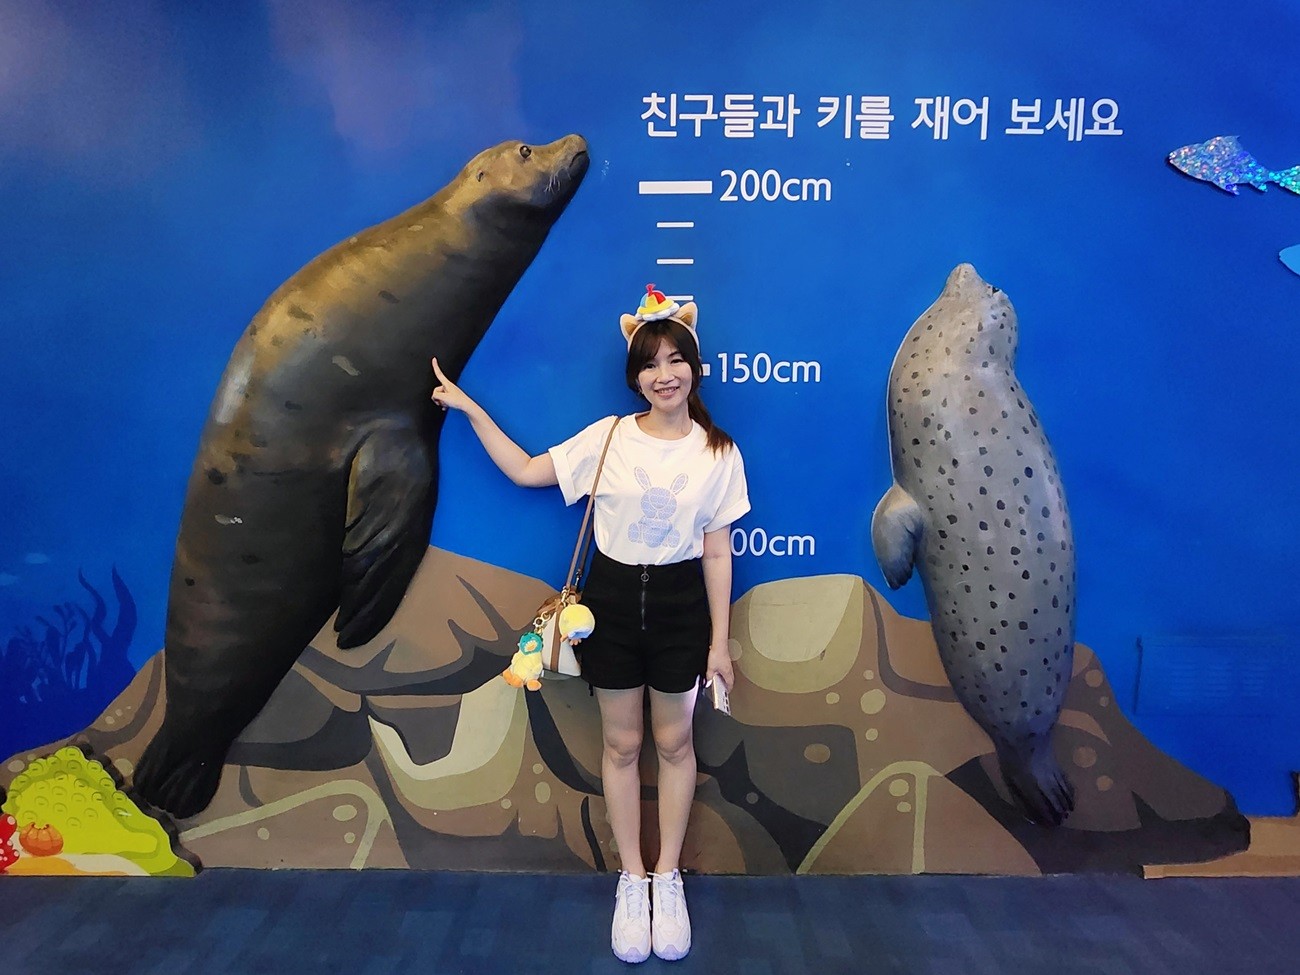 韓國首爾親子景點》樂天世界水族館，首爾下雨景點雨天備案~超萌小白鯨和企鵝有夠療癒！ - yukiblog.tw